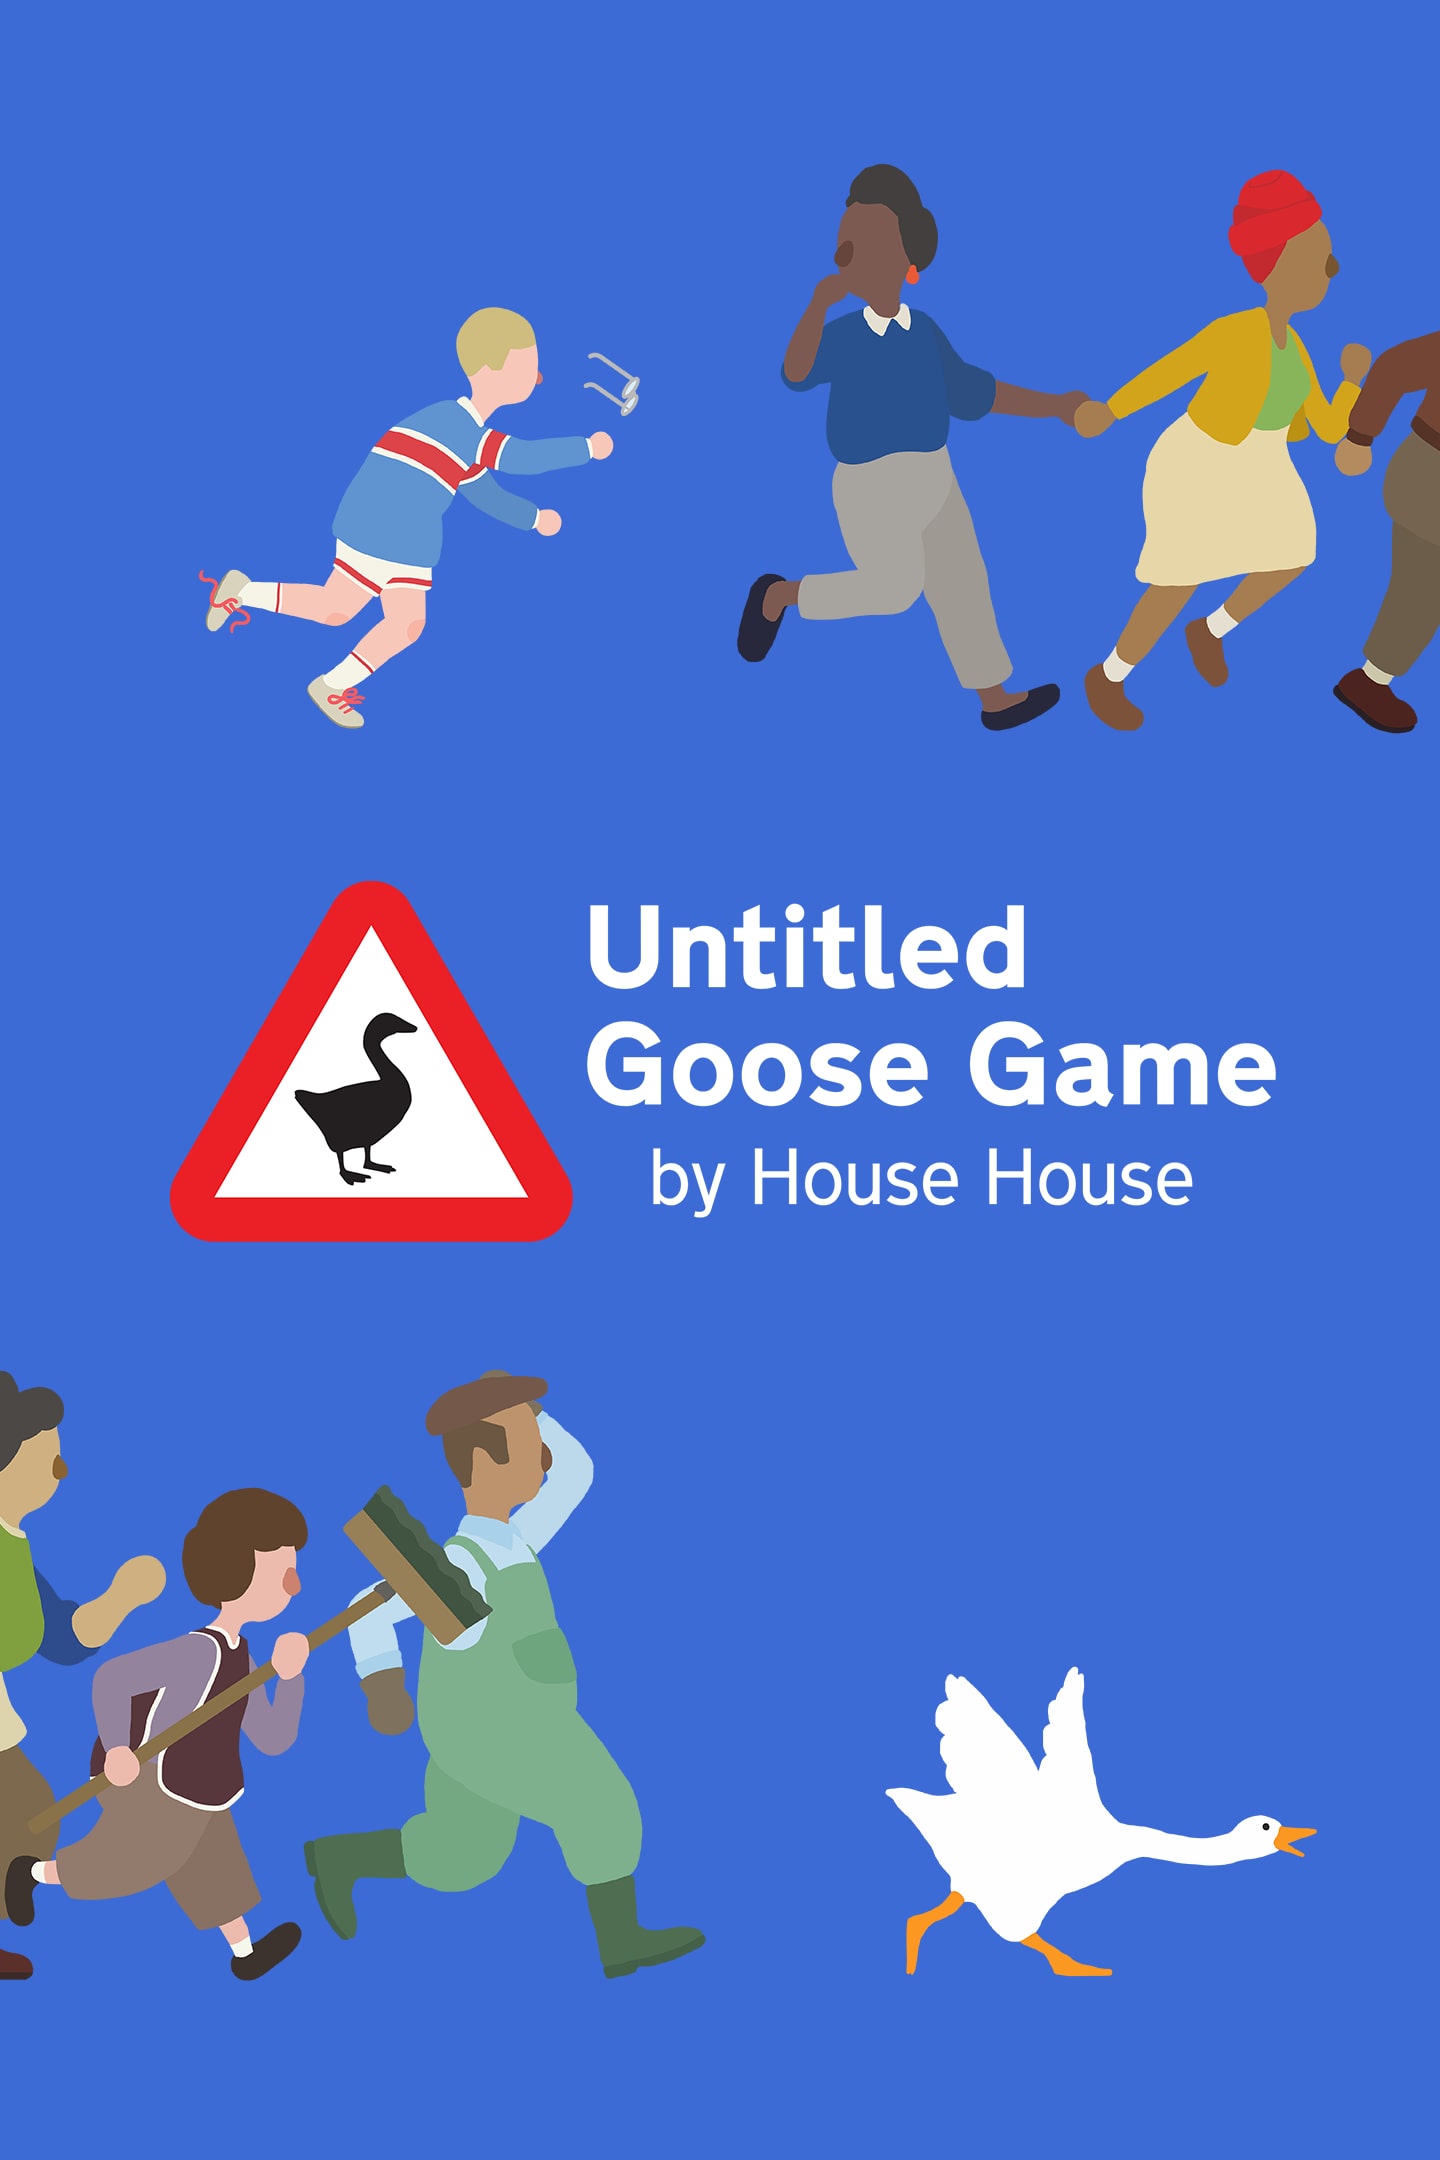 Goose Game, Games